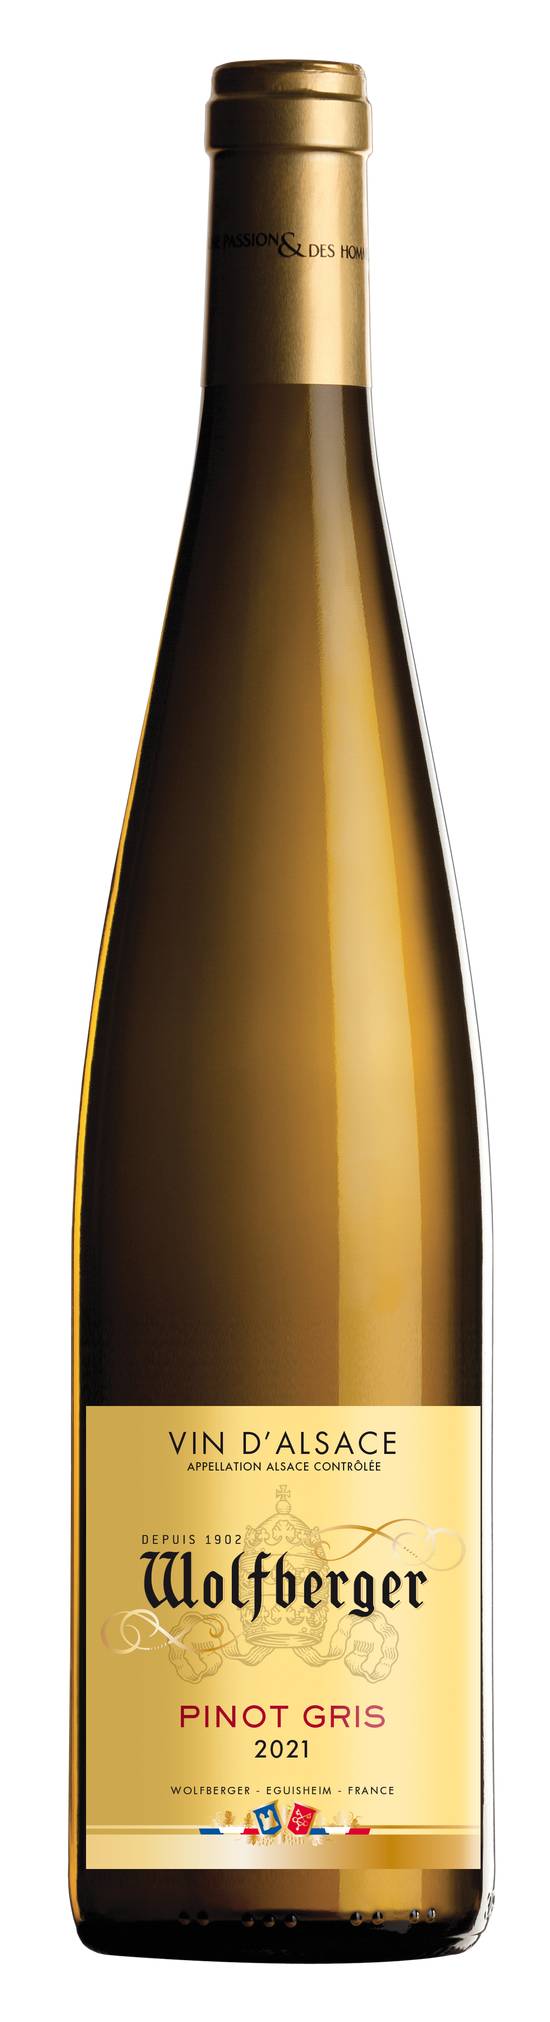 Wolfberger - Pinot gris vin d'alsace 2021 (750 ml)